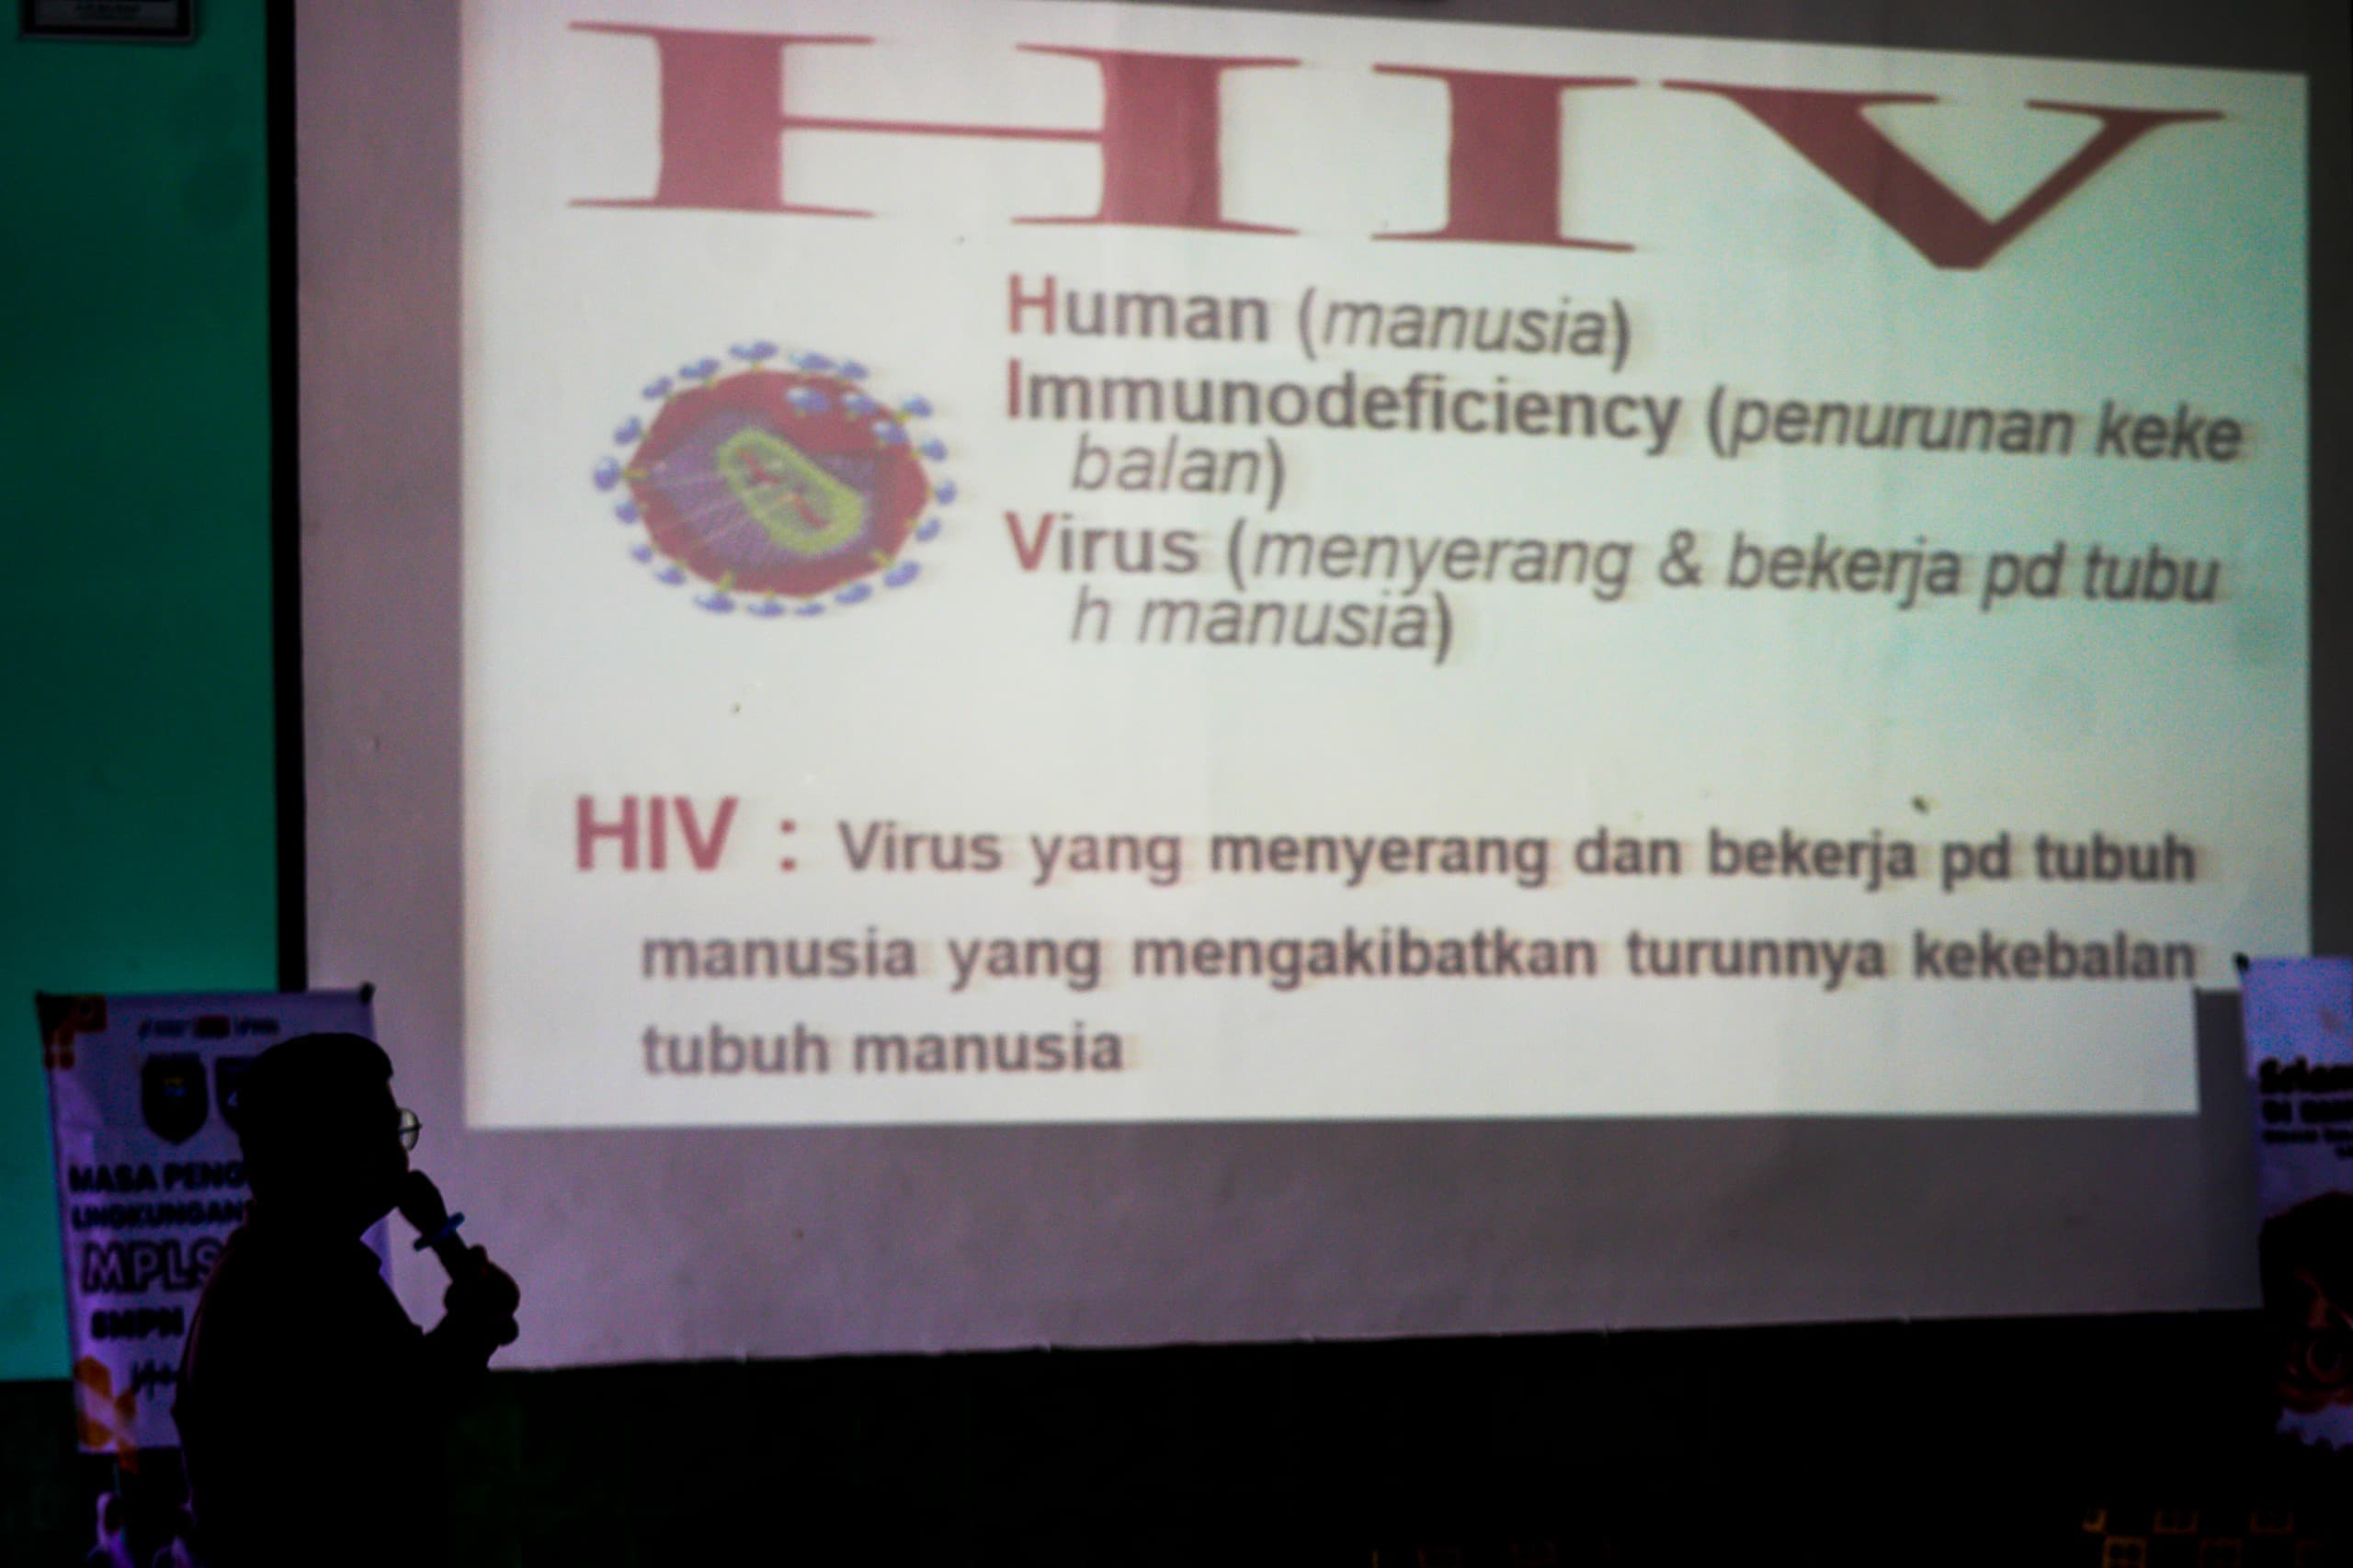 艾滋病毒/艾滋病病例蔓延至年轻人，PPKB 卫生办公室提供社会化服务